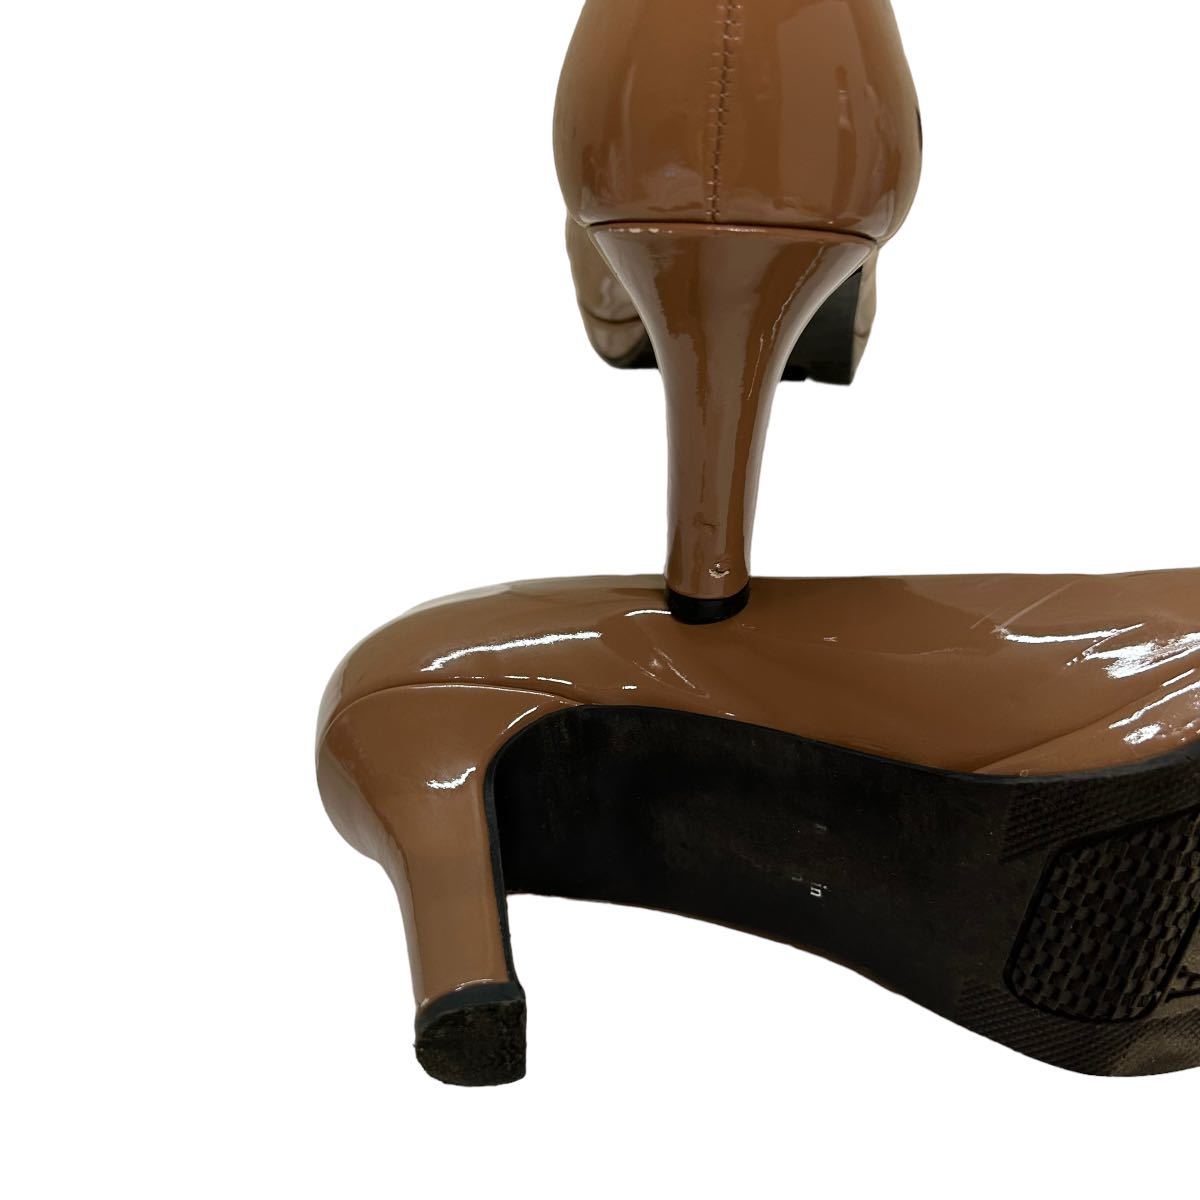 BB265 PRET-A PORTER pre ta Porte женский туфли-лодочки 24.5cm светло-коричневый эмаль сделано в Японии 